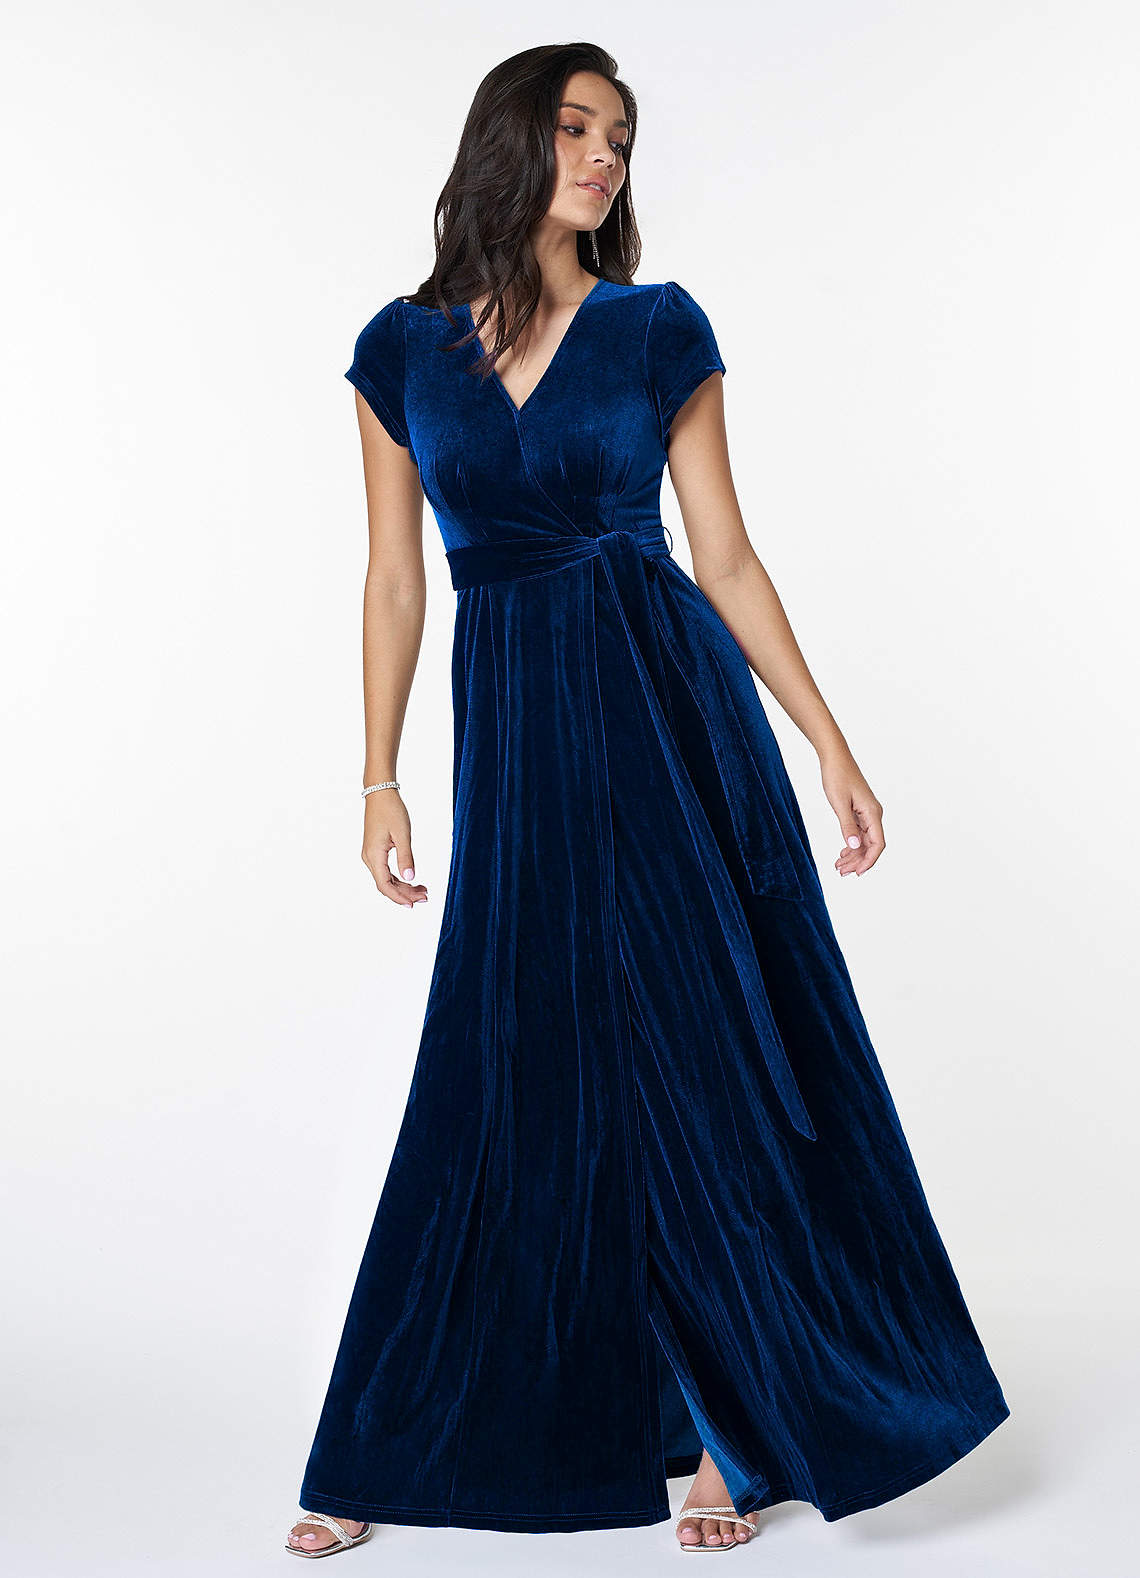 Dreaming Of You Navy Blue Velvet Maxi Dress image1